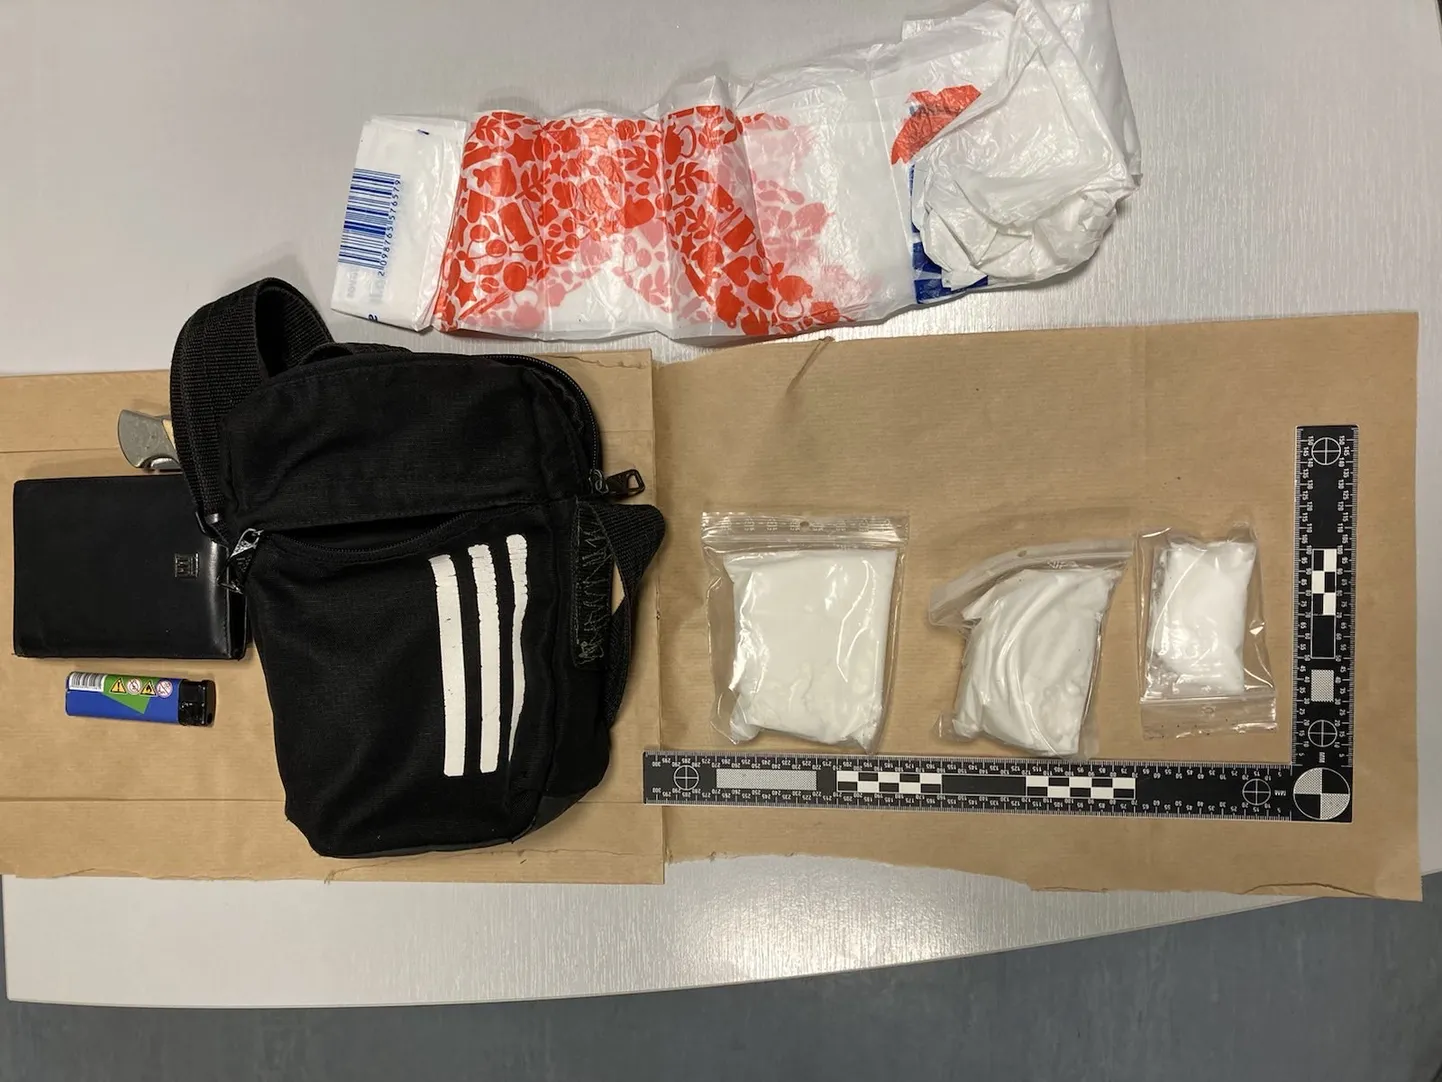 Полиция обнаружила у задержанных 240 граммов амфетамина, который, по всей видимости, предназначался для распространения в Ида-Вирумаа.